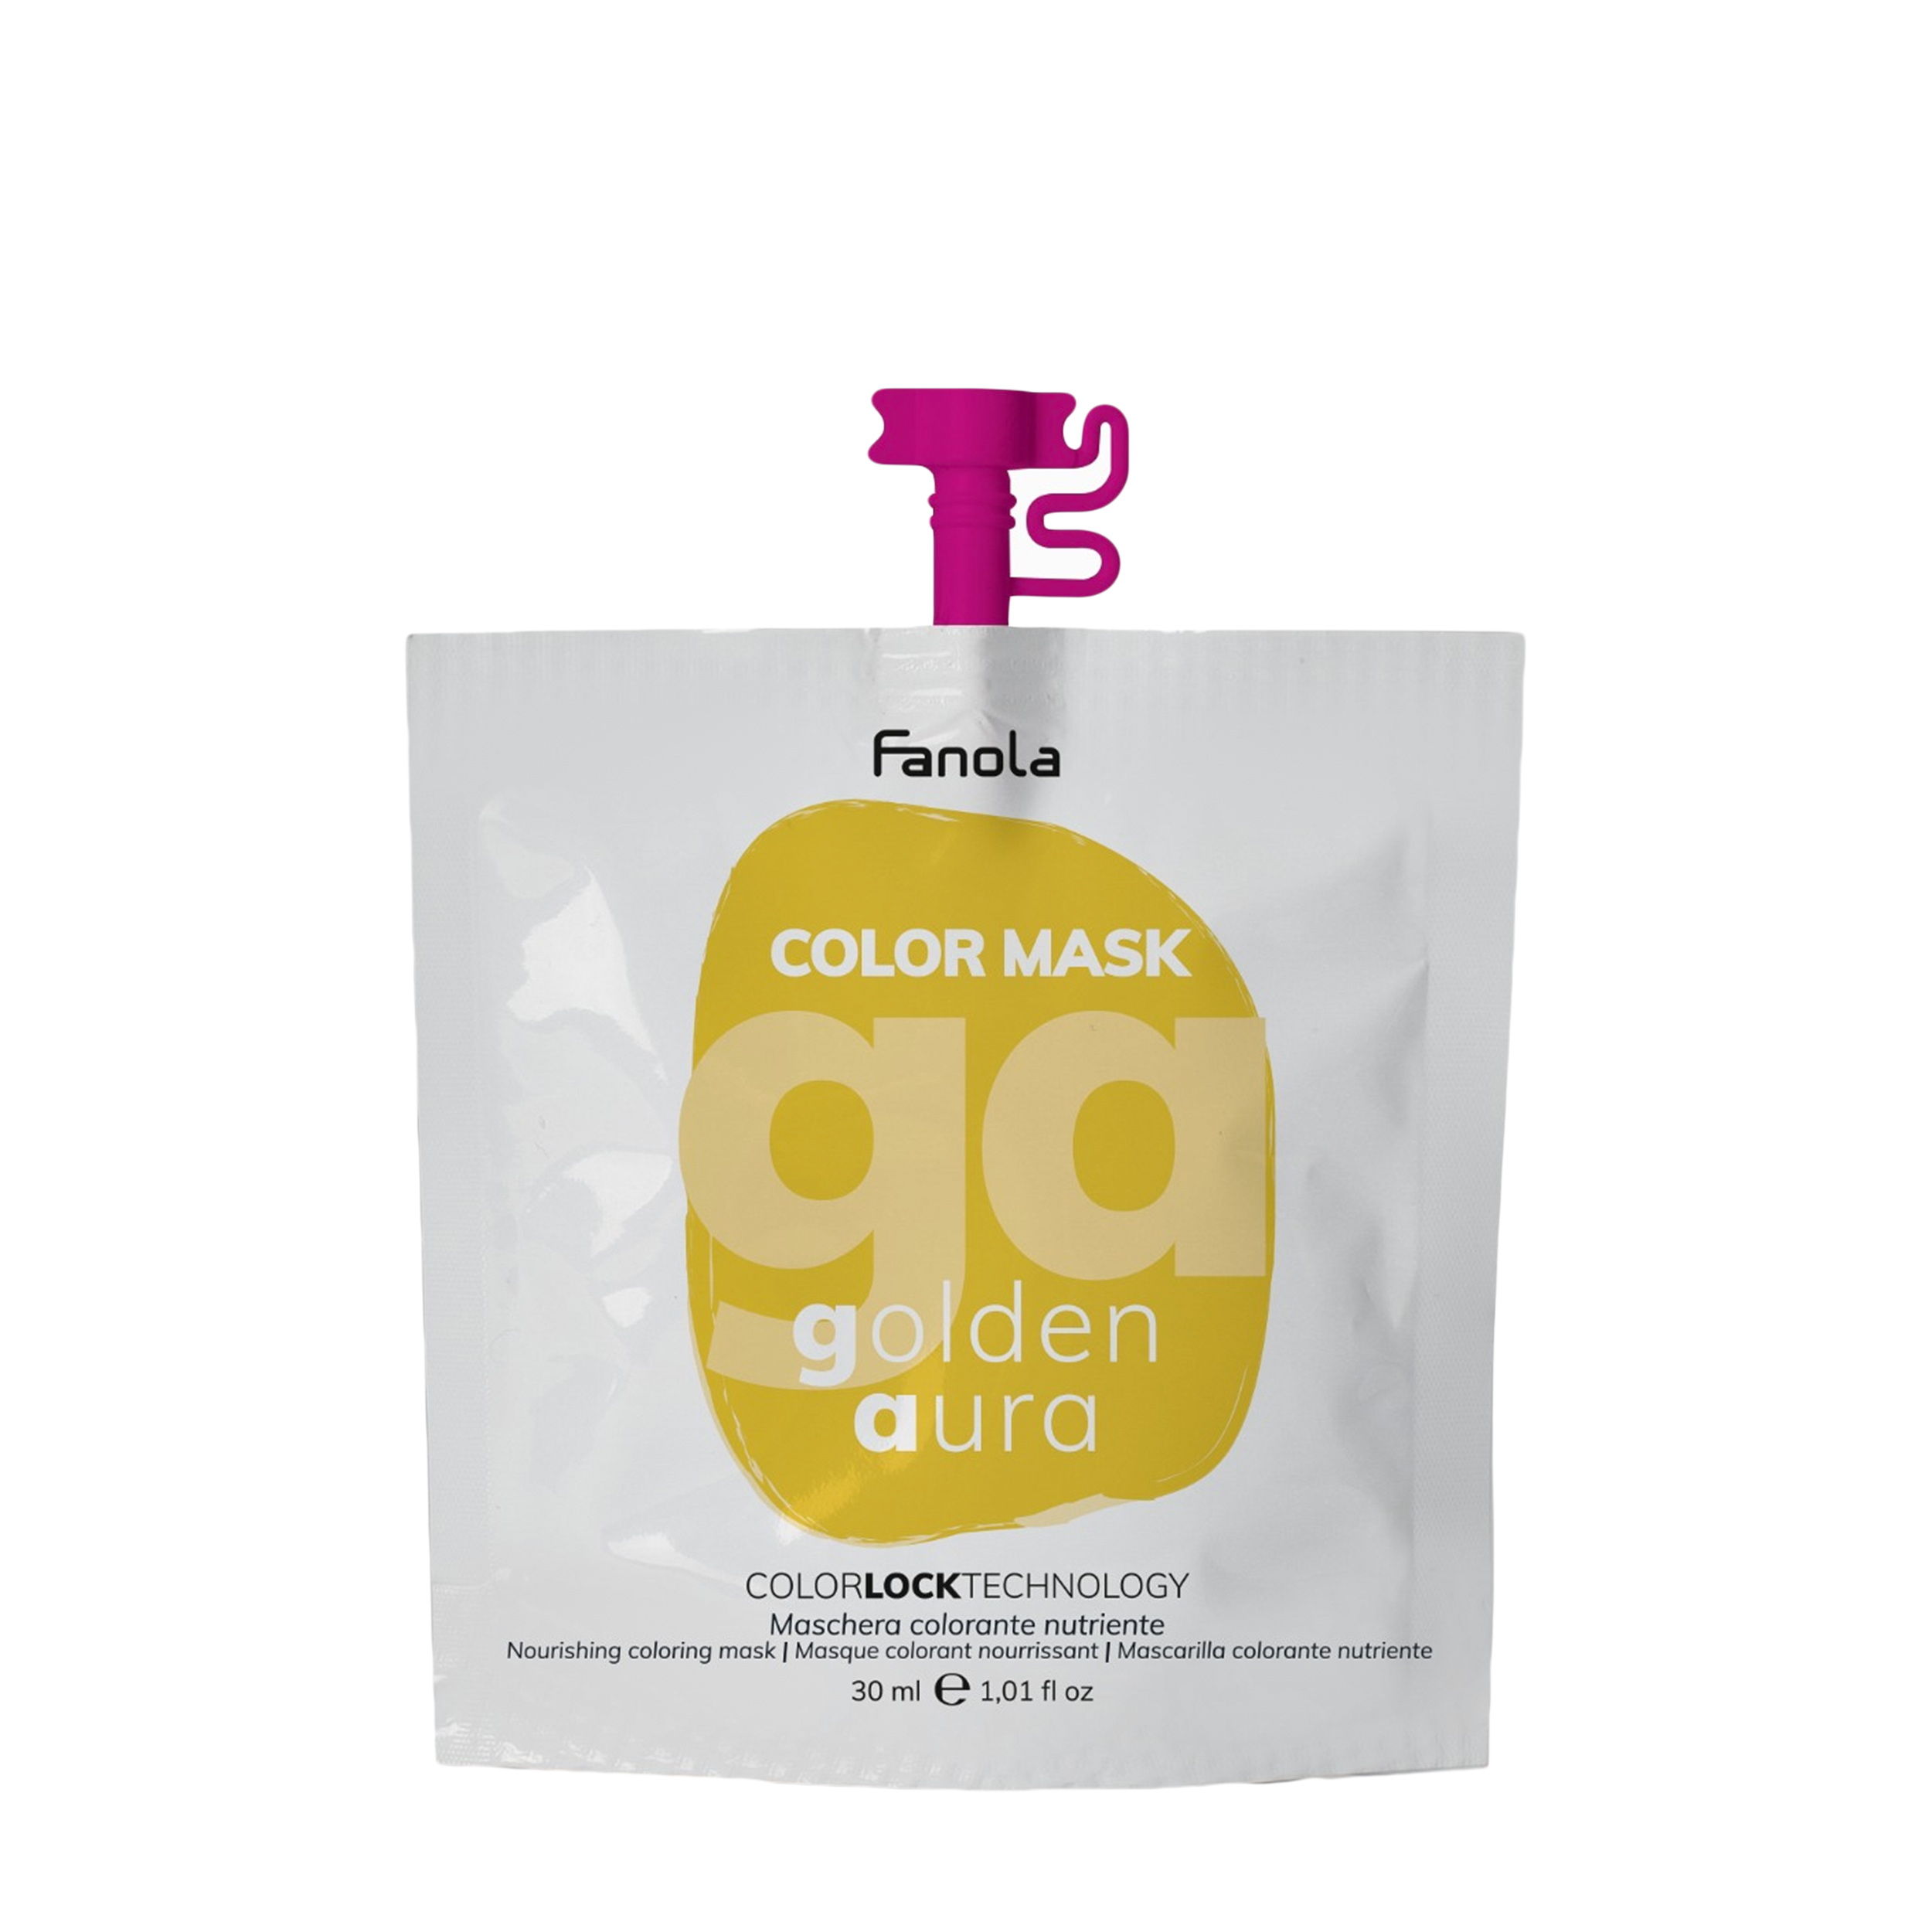 Купить Fanola Fanola Оттеночная маска для волос Fanola Color Mask золотистая, 30 мл 30 мл